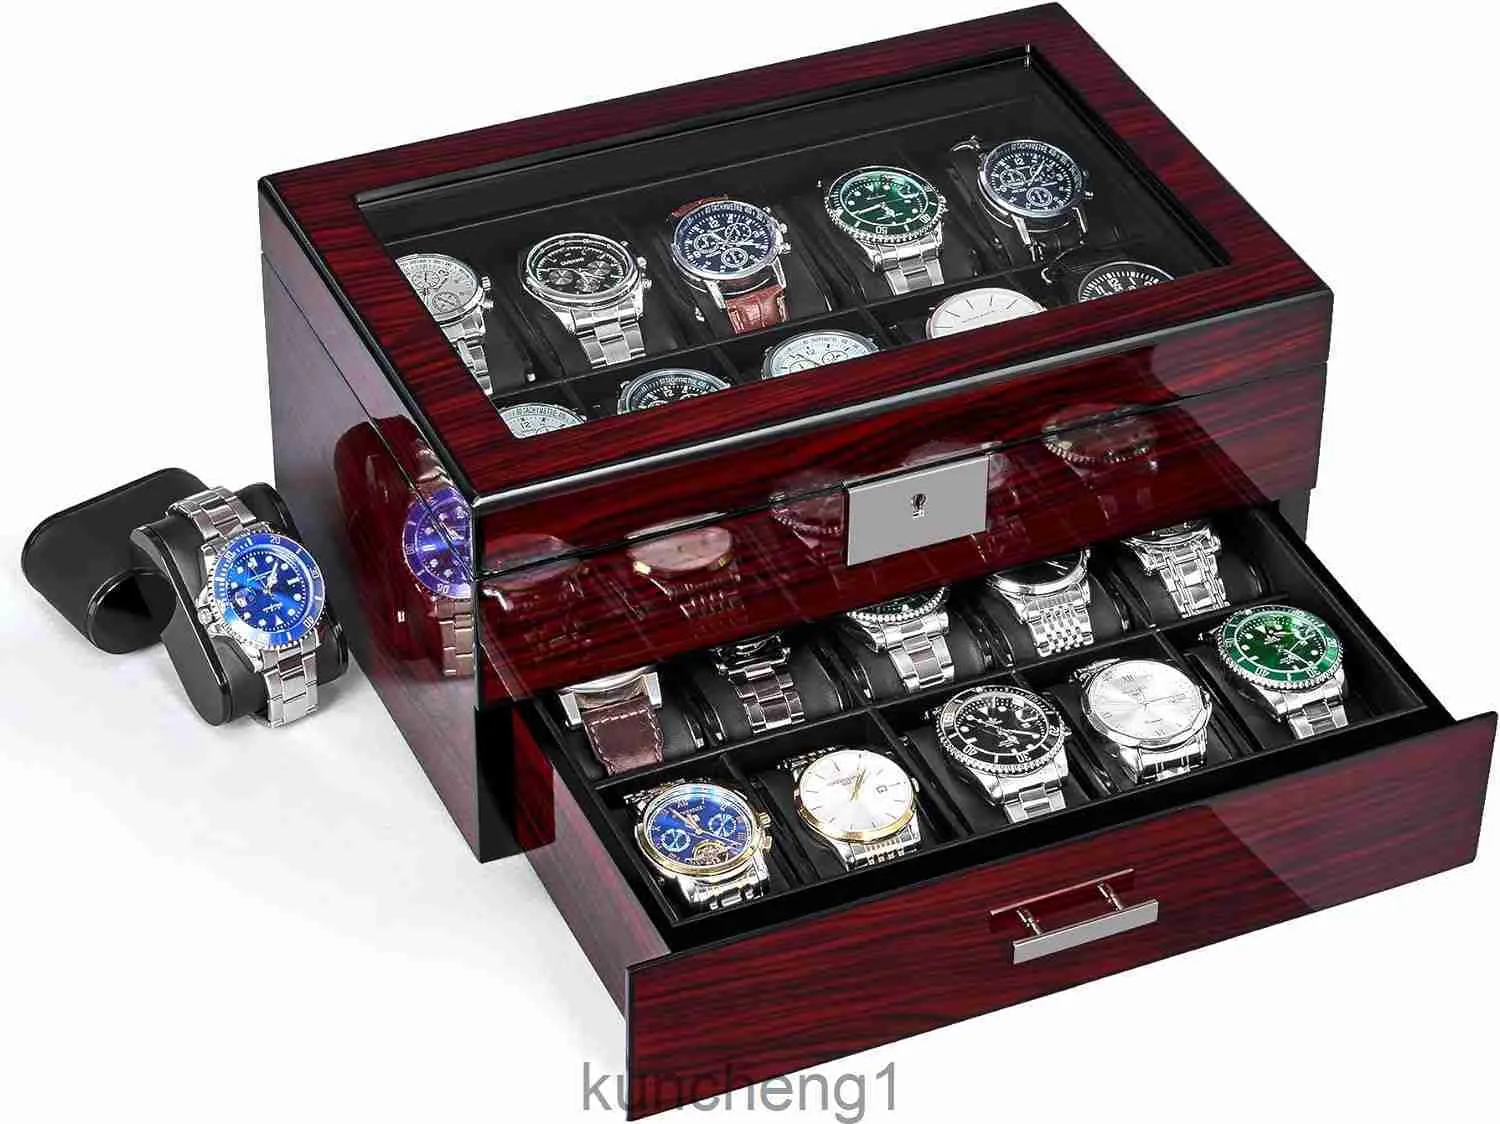 Anwbroad 20 slot watch box watch case för män med stort glas lock 2-tier klocka display fodral låsbar klocka arrangör presentbar lyxig klockhållare ujwb002y